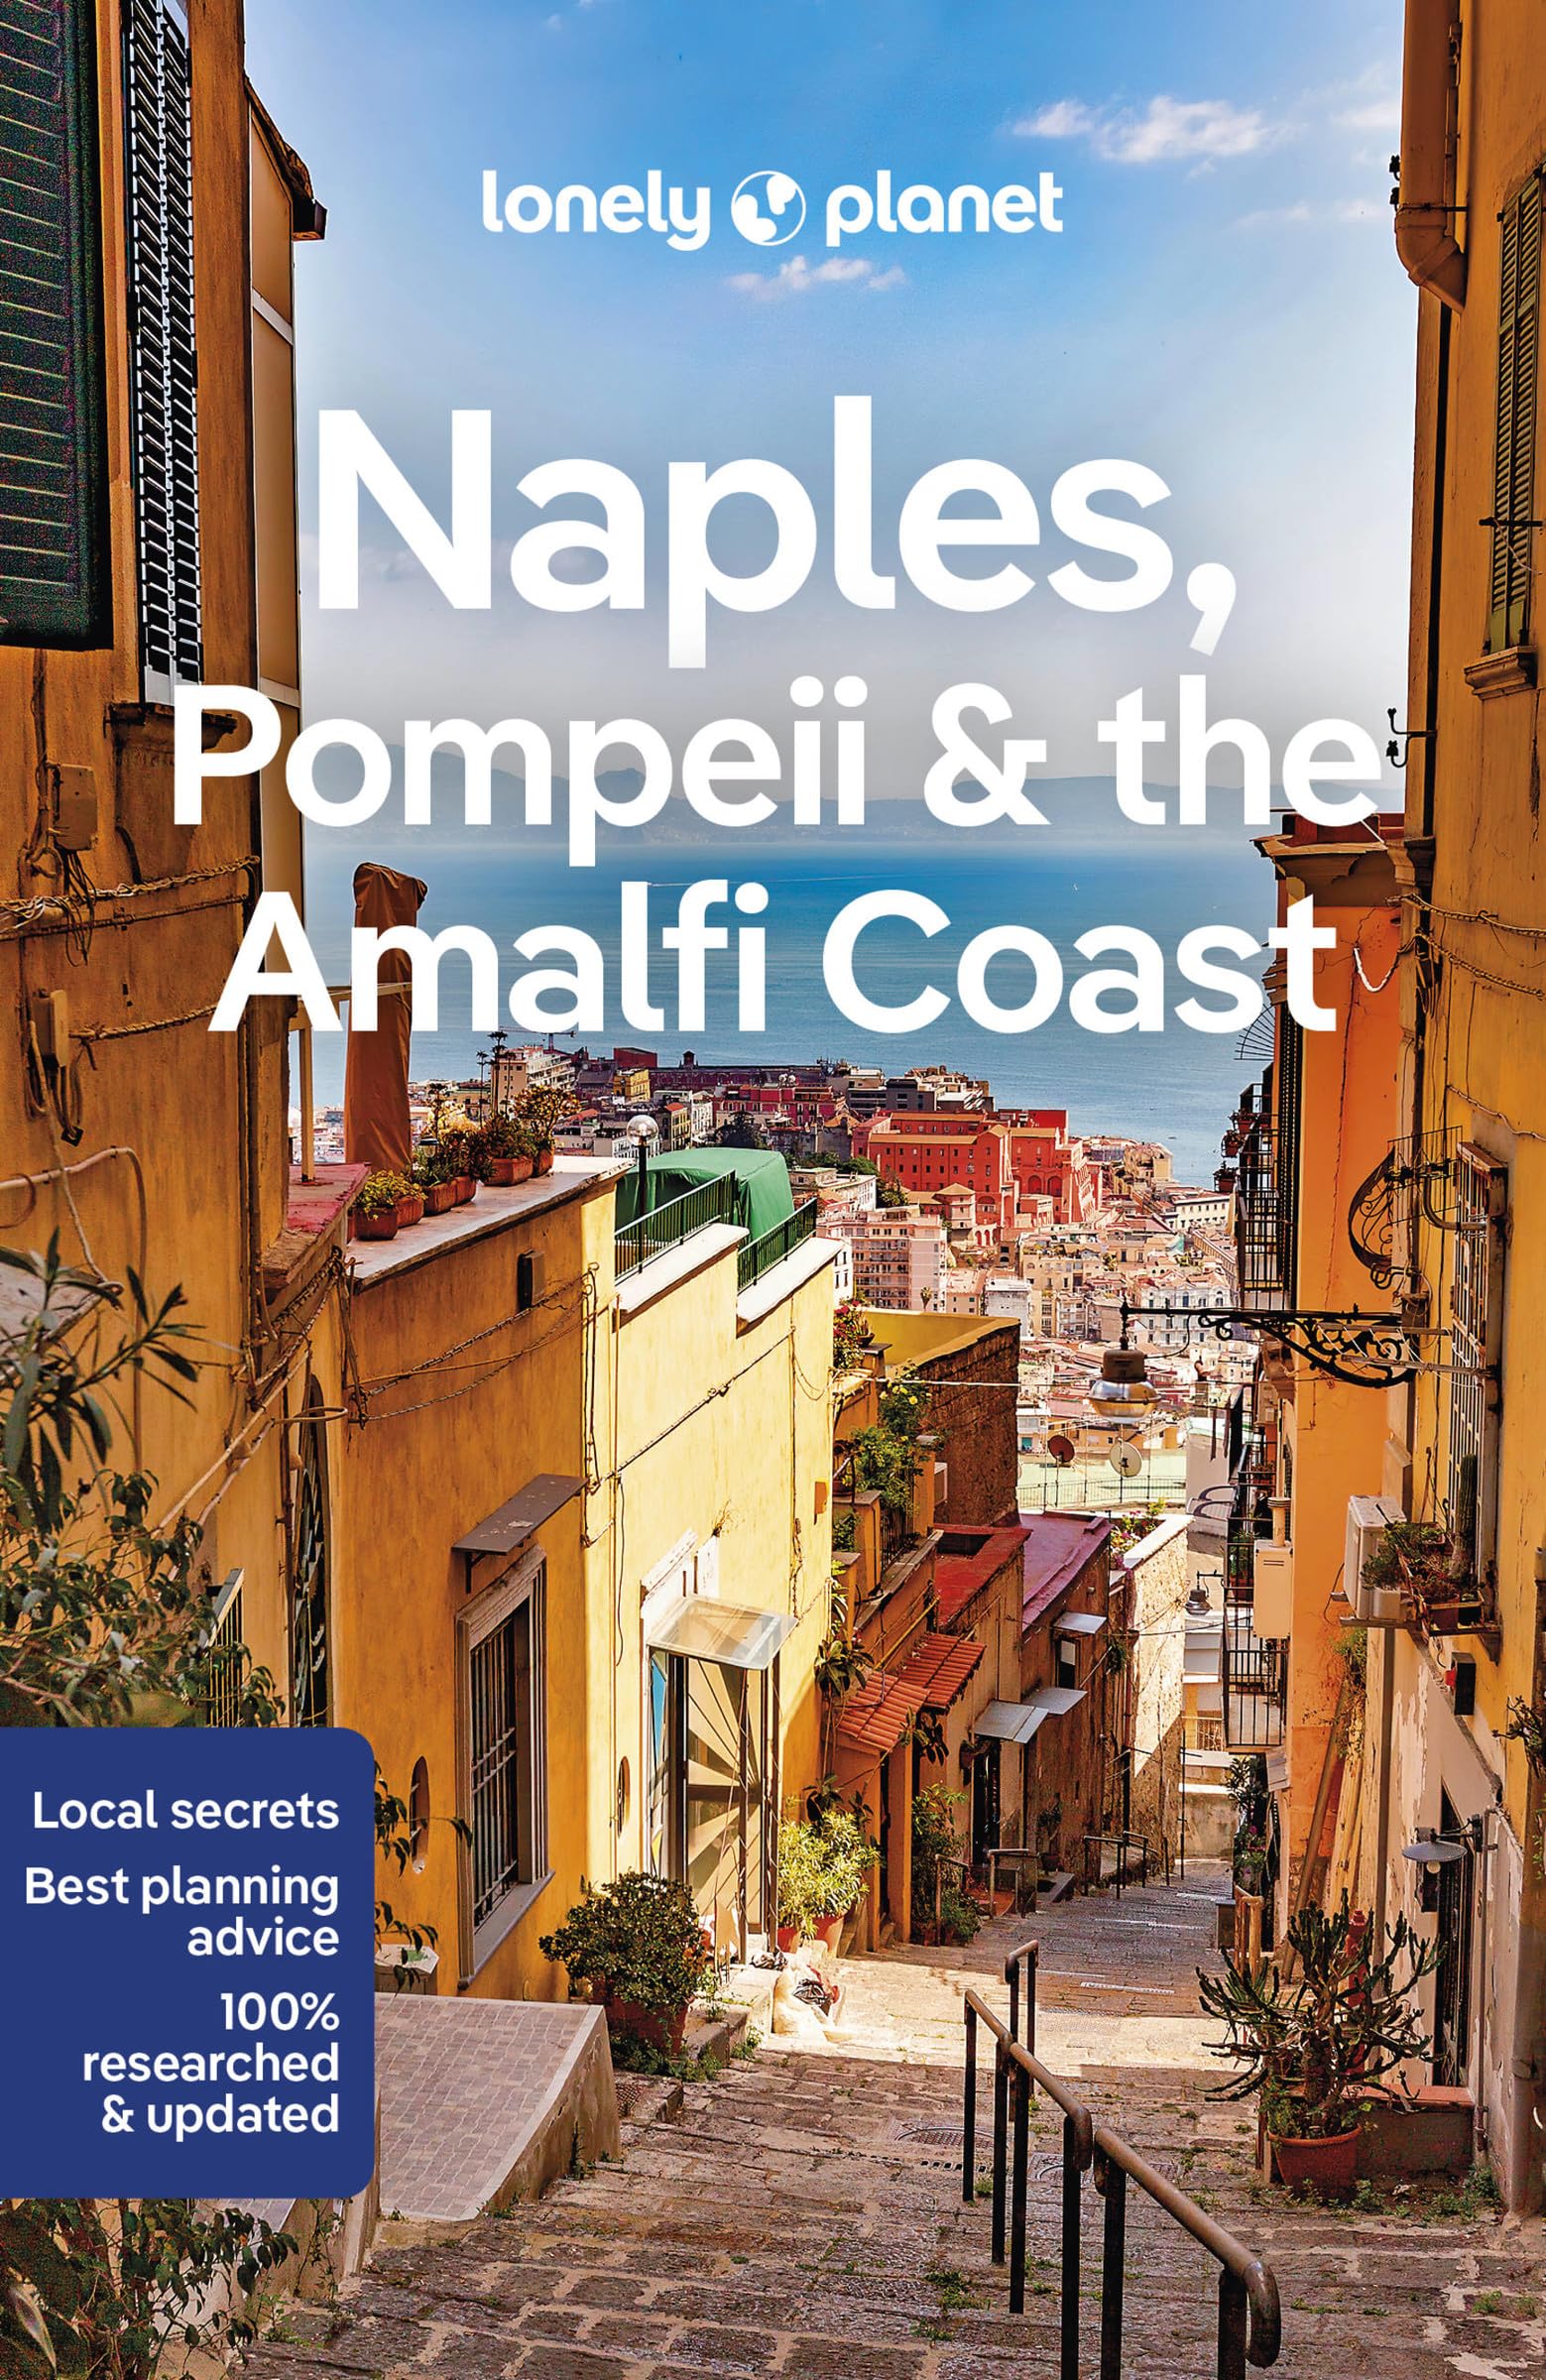 מדריך באנגלית LP נאפולי וחוף אמלפי